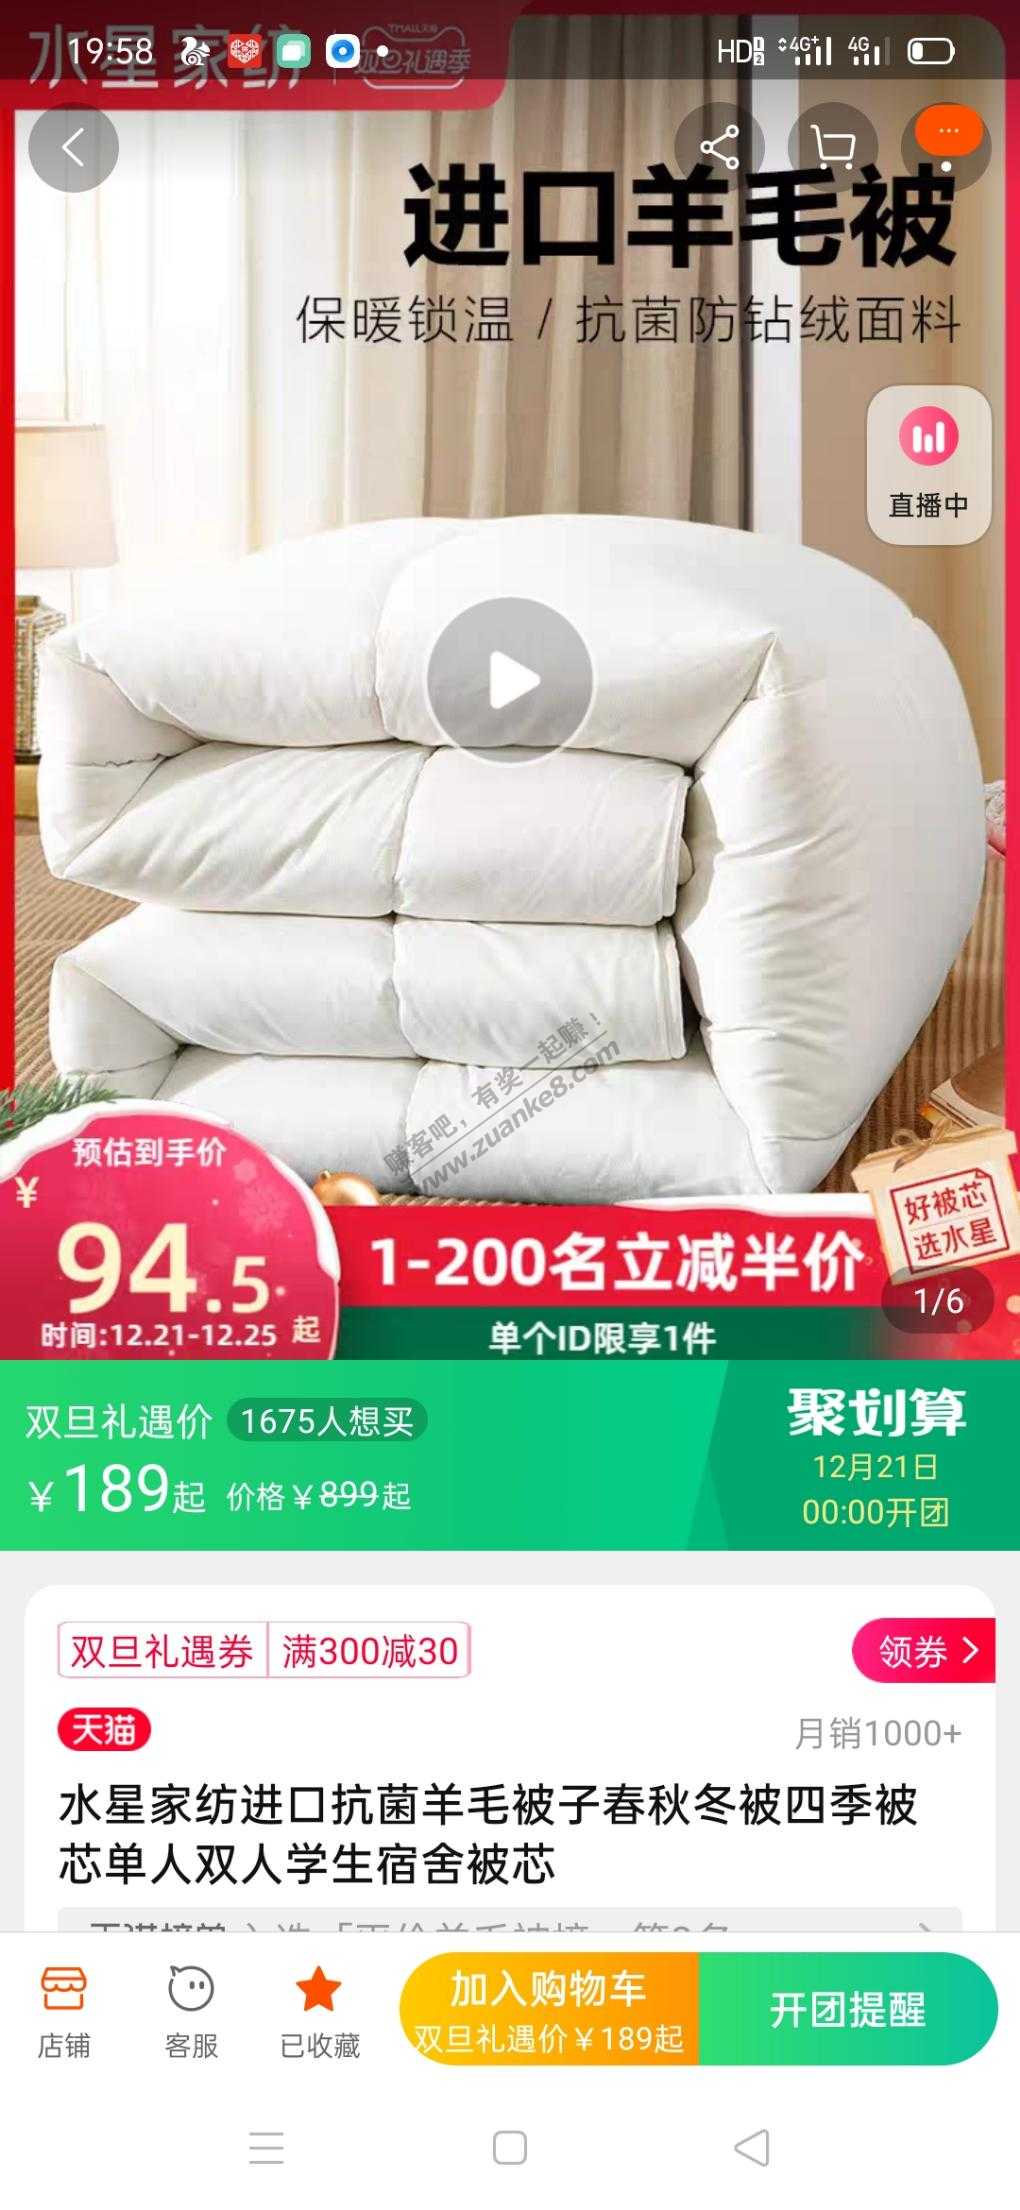 水星羊毛被特价94.5-惠小助(52huixz.com)